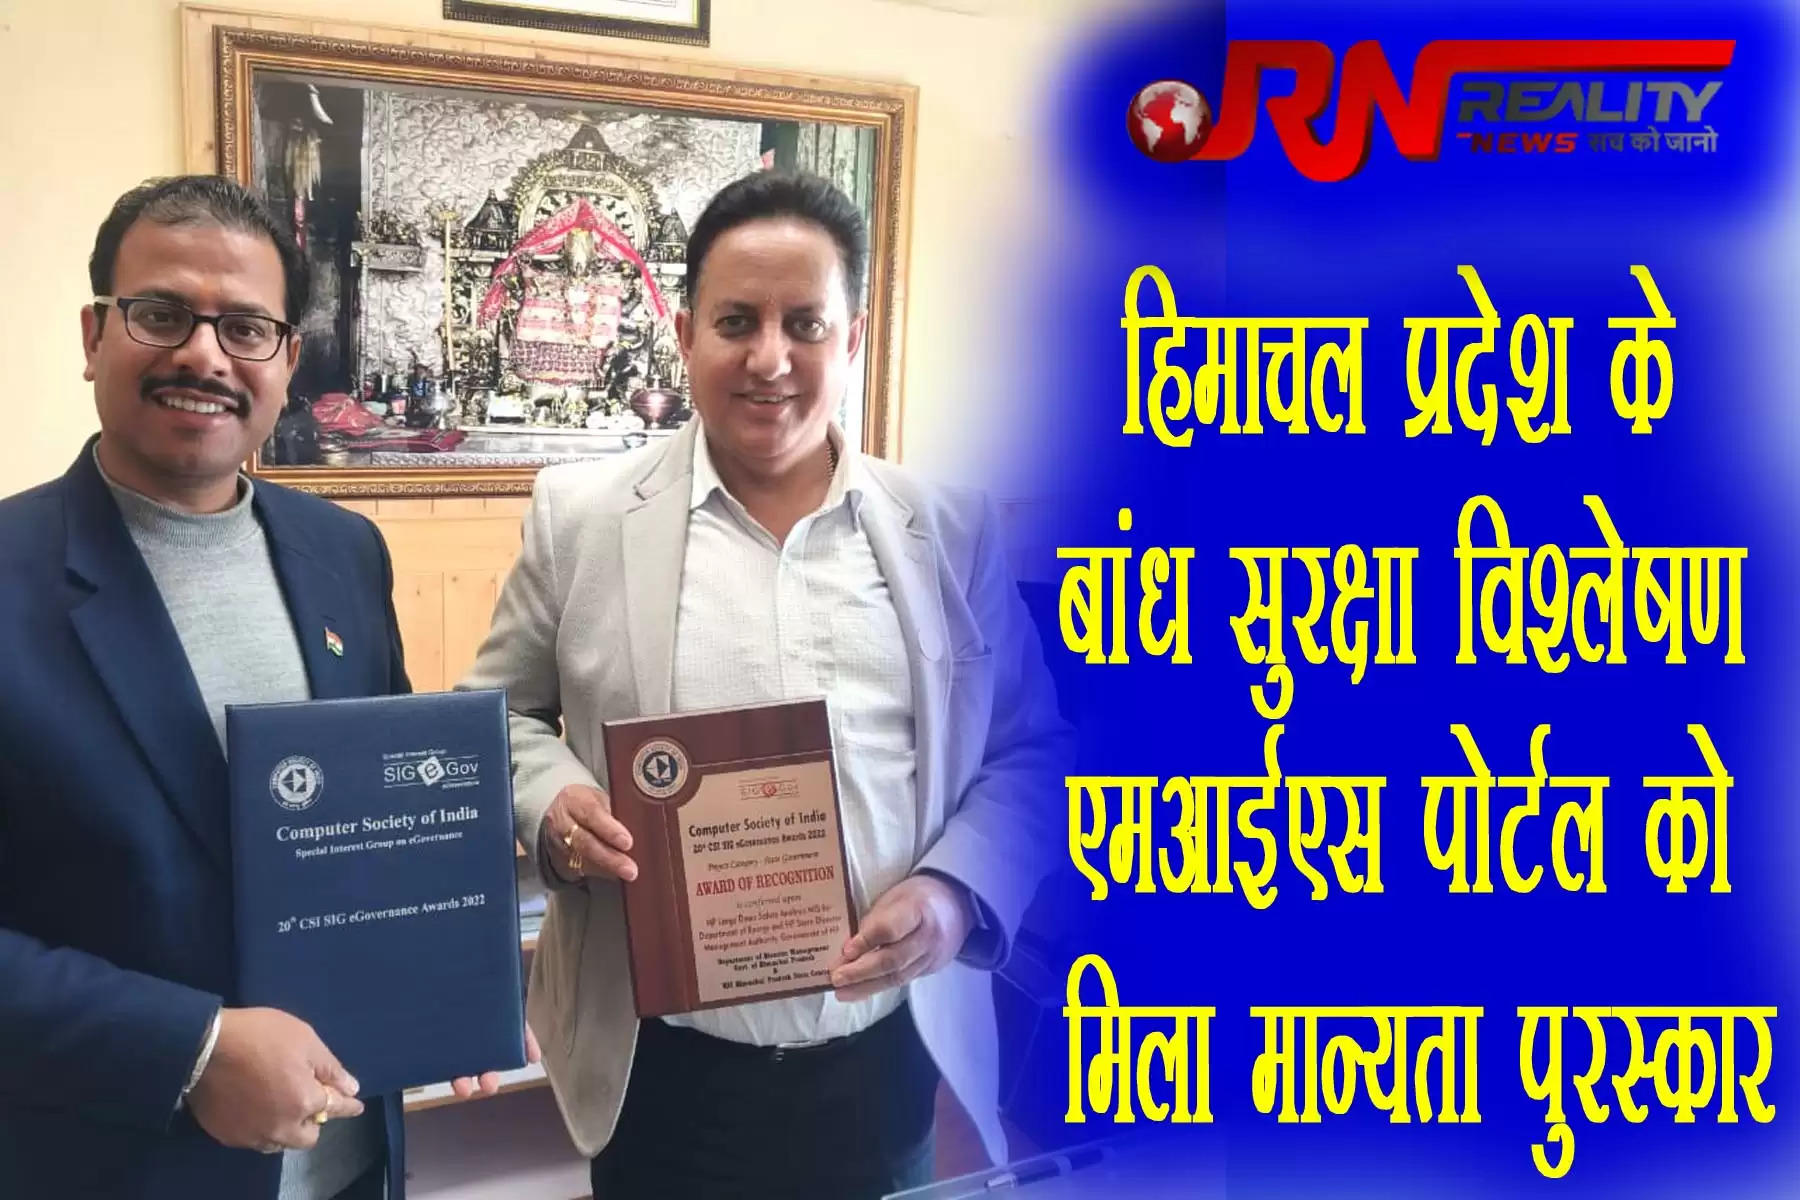 राज्य आपदा प्रबंधन प्राधिकरण के एक प्रवक्ता ने सोमवार को बताया कि हिमाचल प्रदेश राज्य आपदा प्रबंधन प्राधिकरण, ऊर्जा विभाग और एनआईसी को बड़े बांध सुरक्षा विश्लेषण एमआईएस के लिए ‘मान्यता पुरस्कार’ प्रदान किया गया। यह पुरस्कार नई दिल्ली में आयोजित 20वें कंप्यूटर सोसाईटी ऑफ इंडिया-विशेष रुचि समूह (एसआईजी) पुरस्कार-2022 में प्रदान किया गया।   Recognition Award to himachal Dam Safety Analysis MIS Portal 